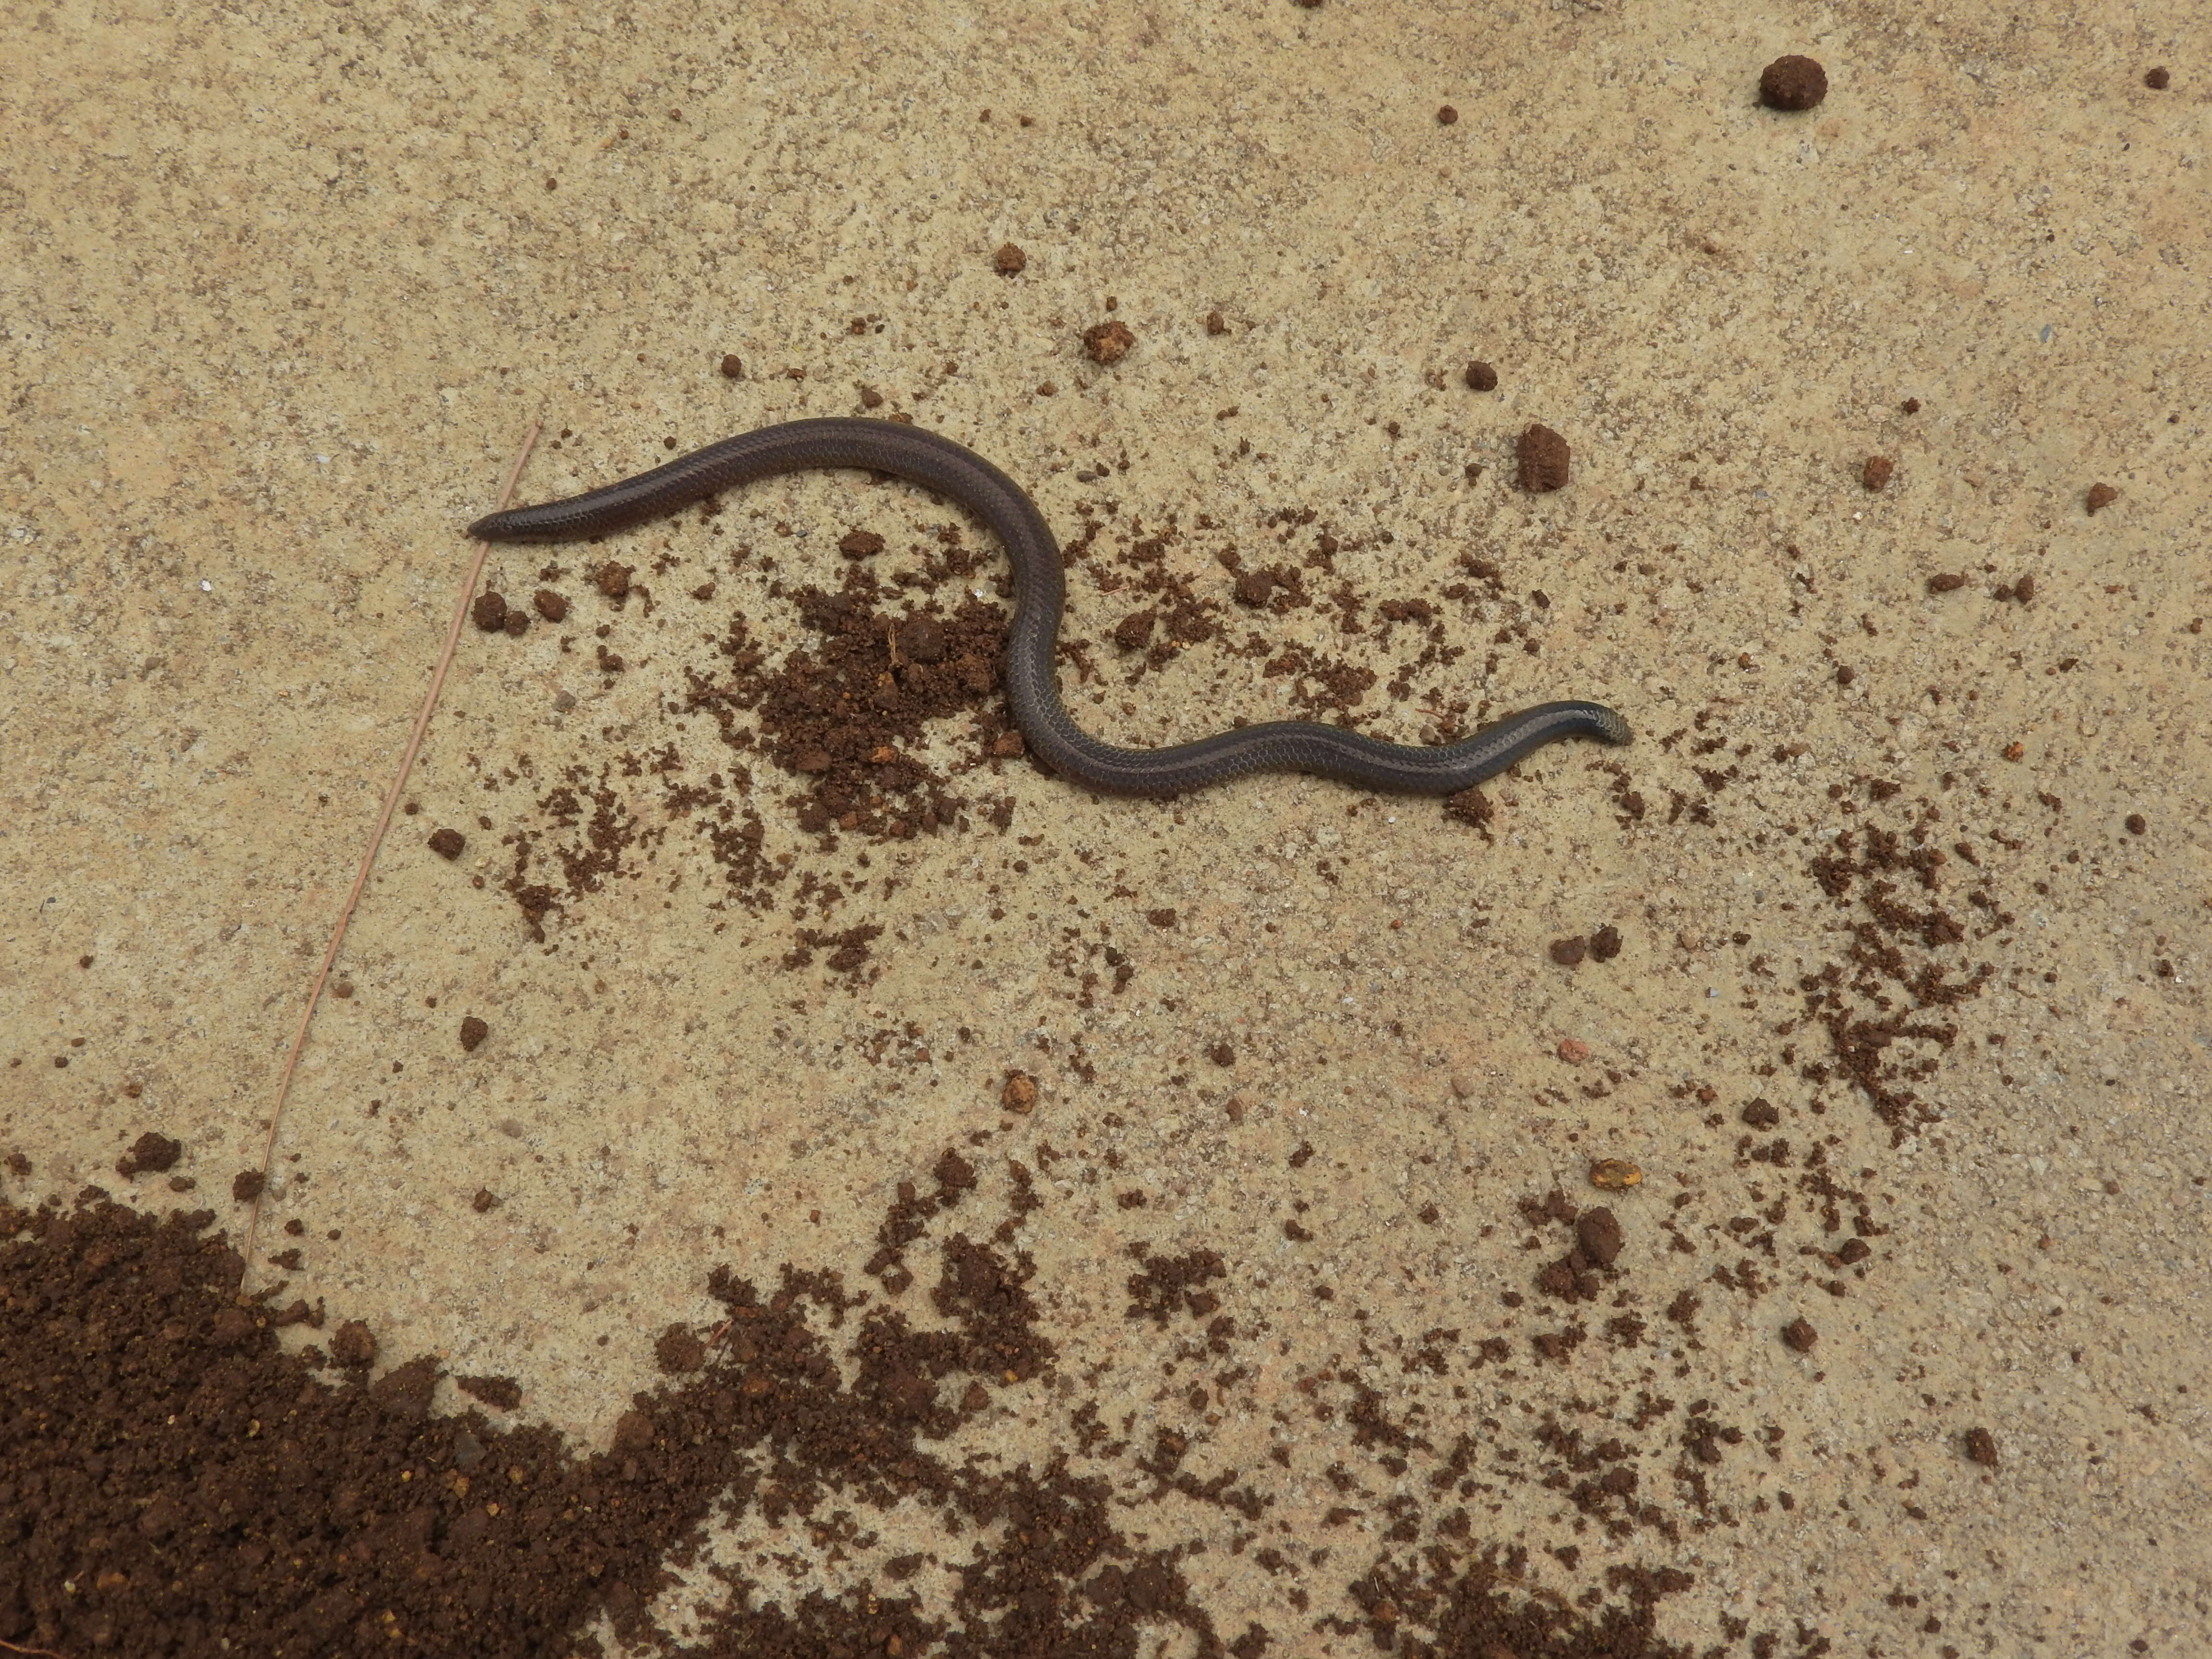 Image of Elliot's Earth Snake